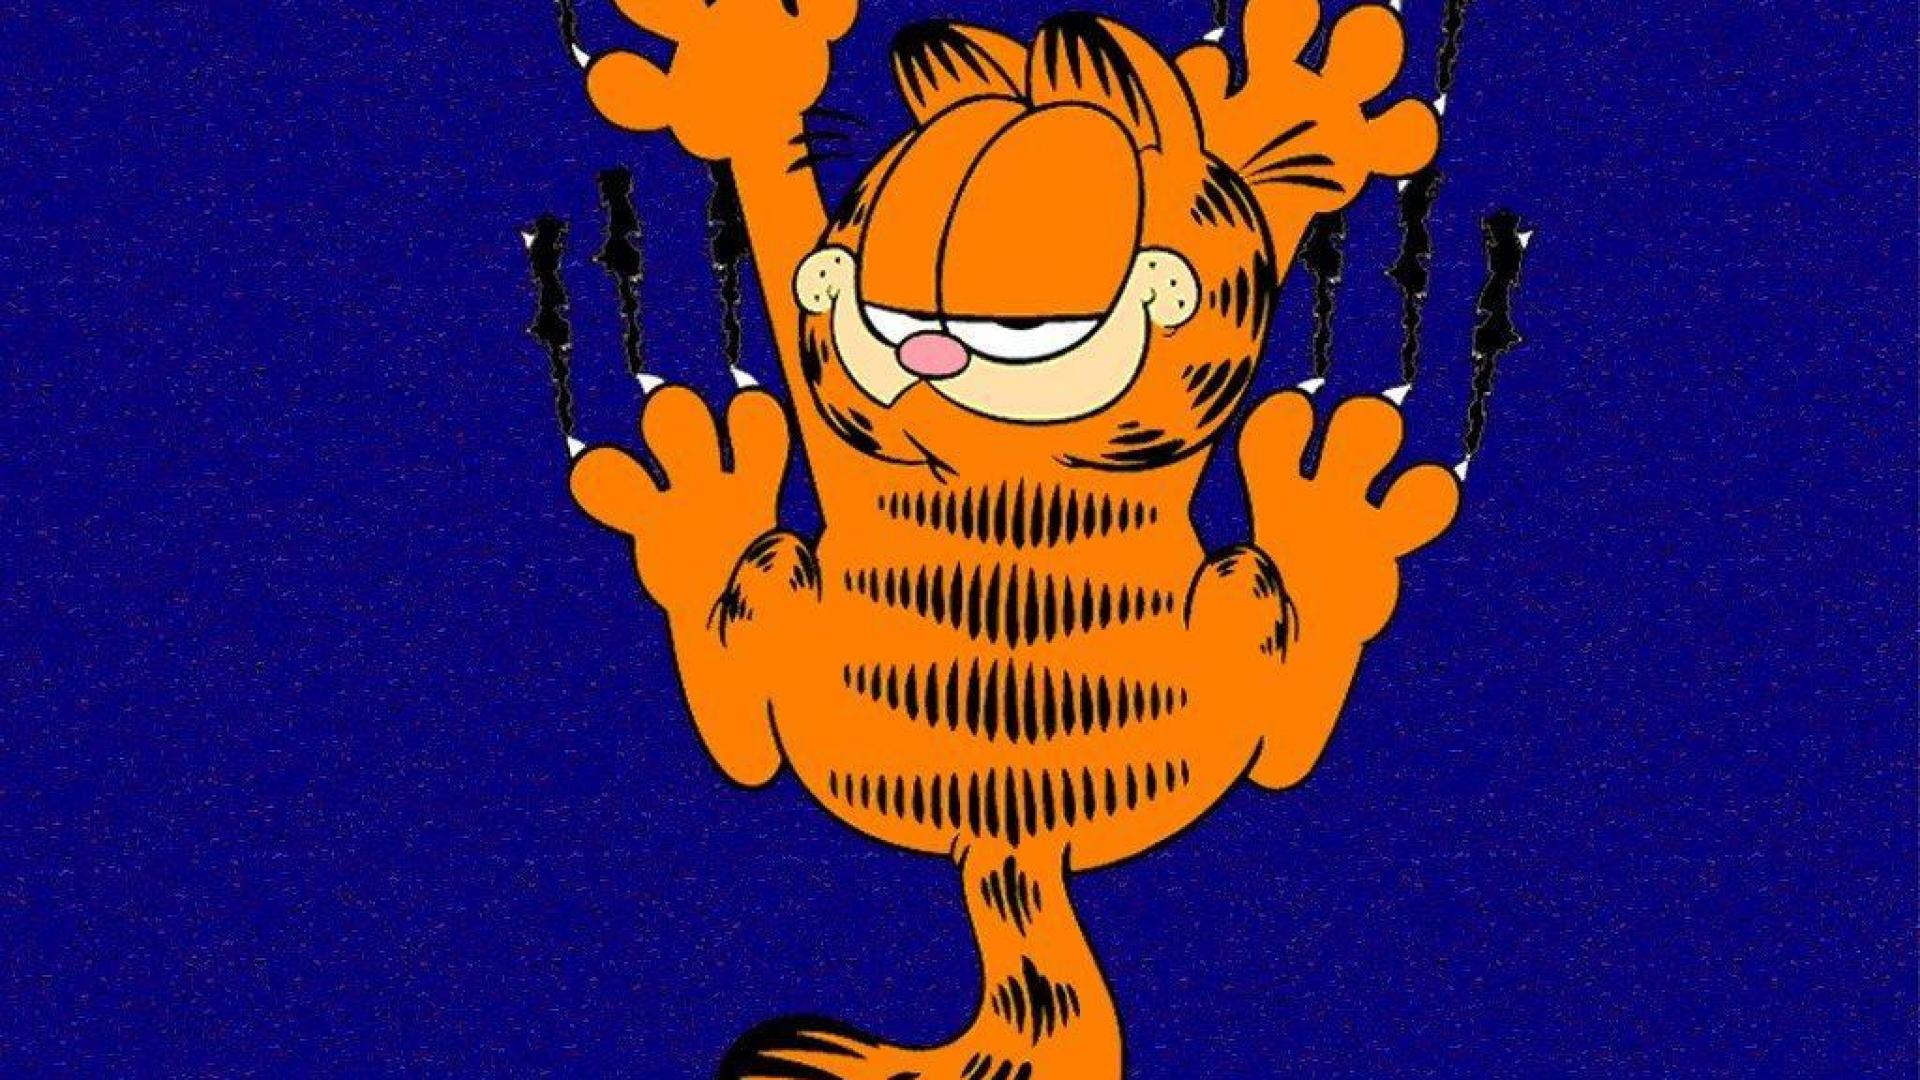 100+] Garfield Wallpapers | Wallpapers.com